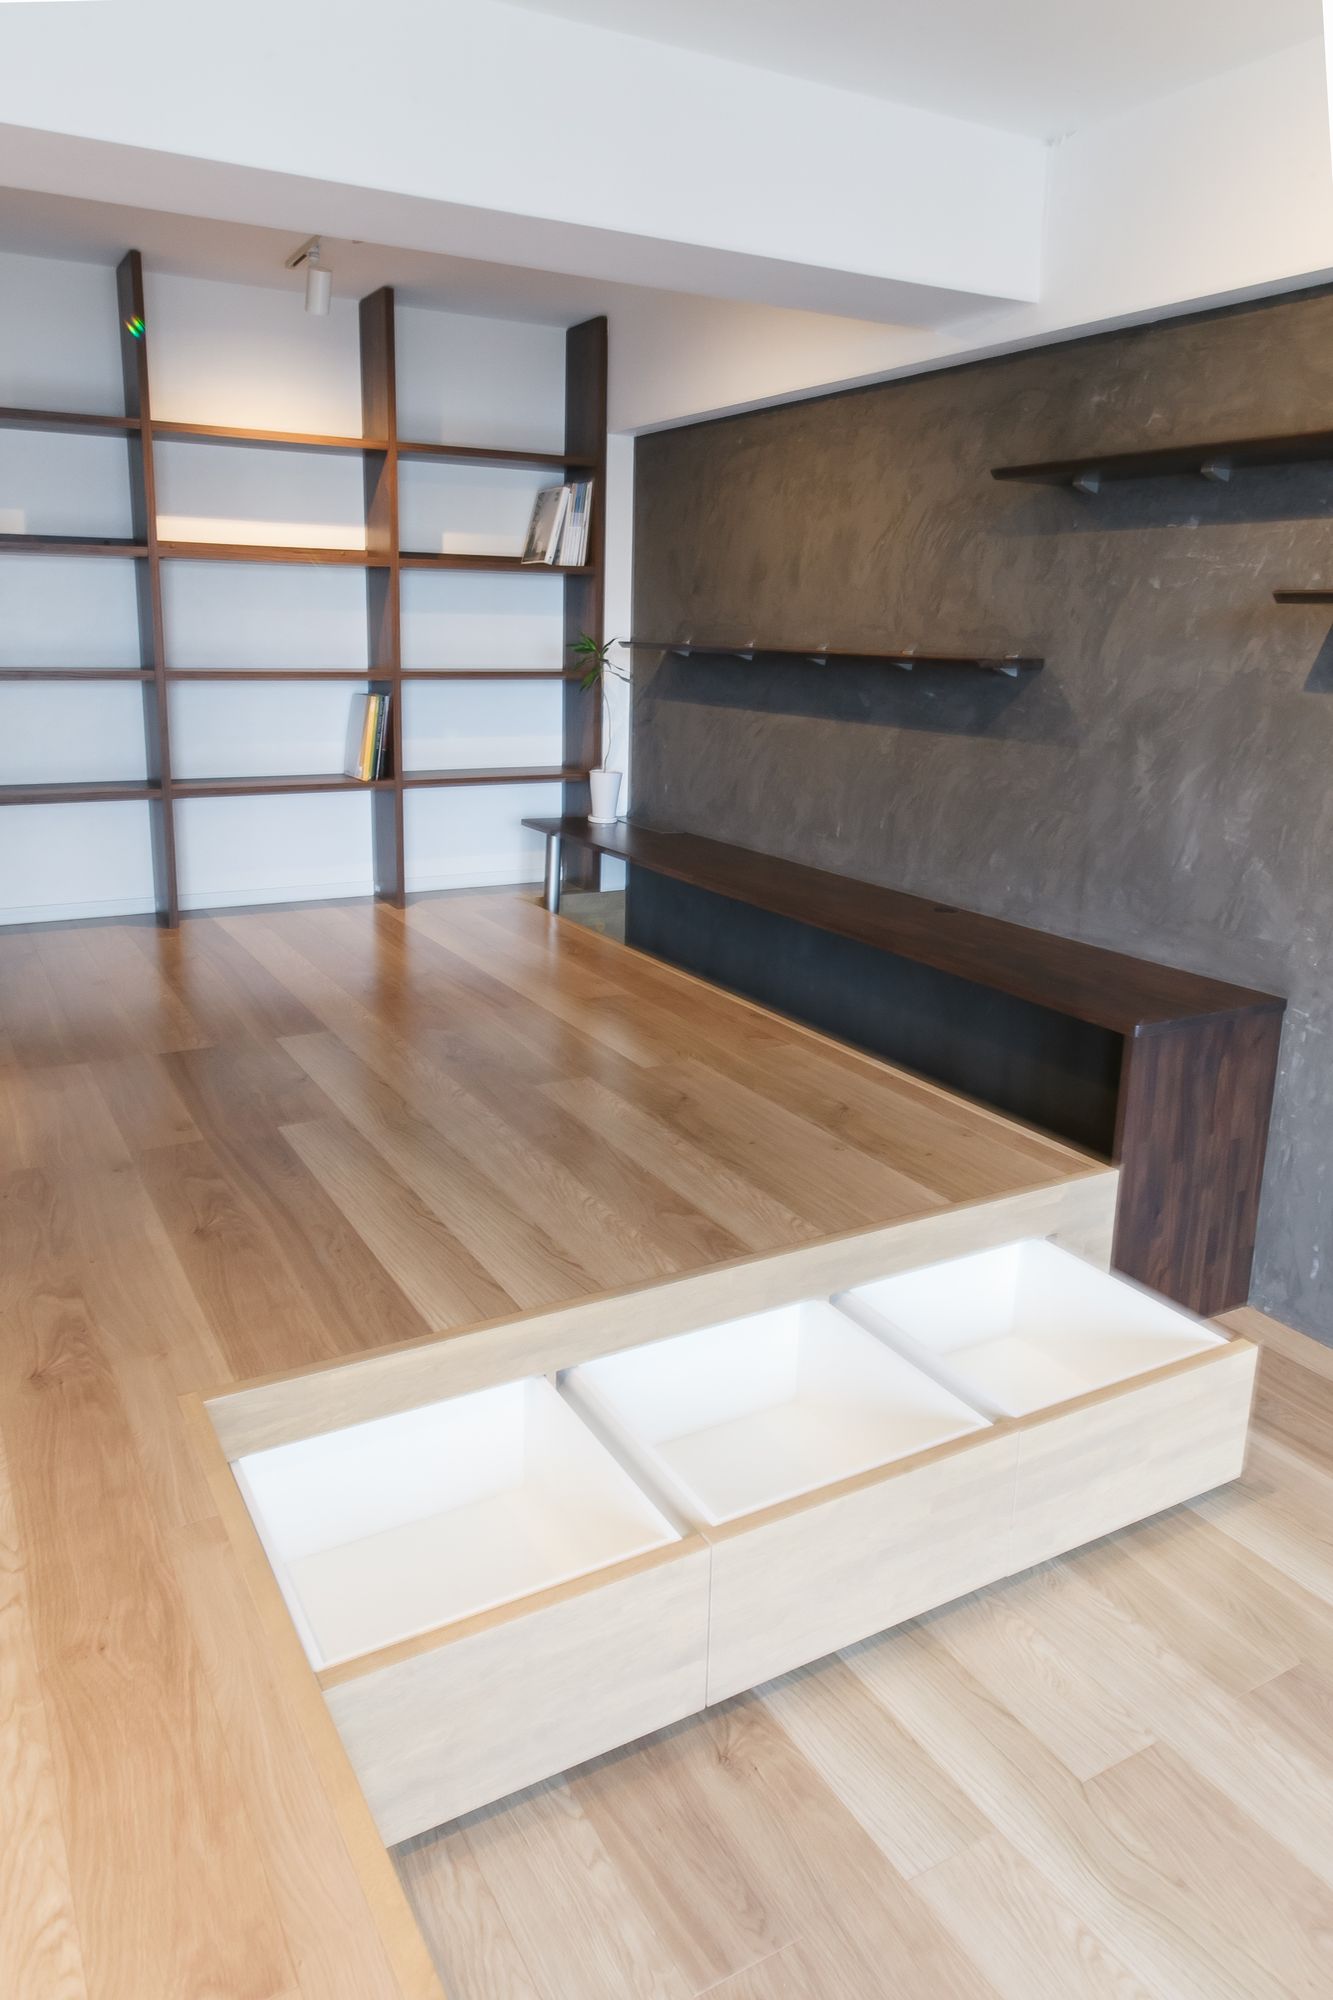 リビングダイニングを段差のある床で作る内装 収納にこだわったマンションリフォーム事例 神奈川 横浜 カナジュウコーポレーション